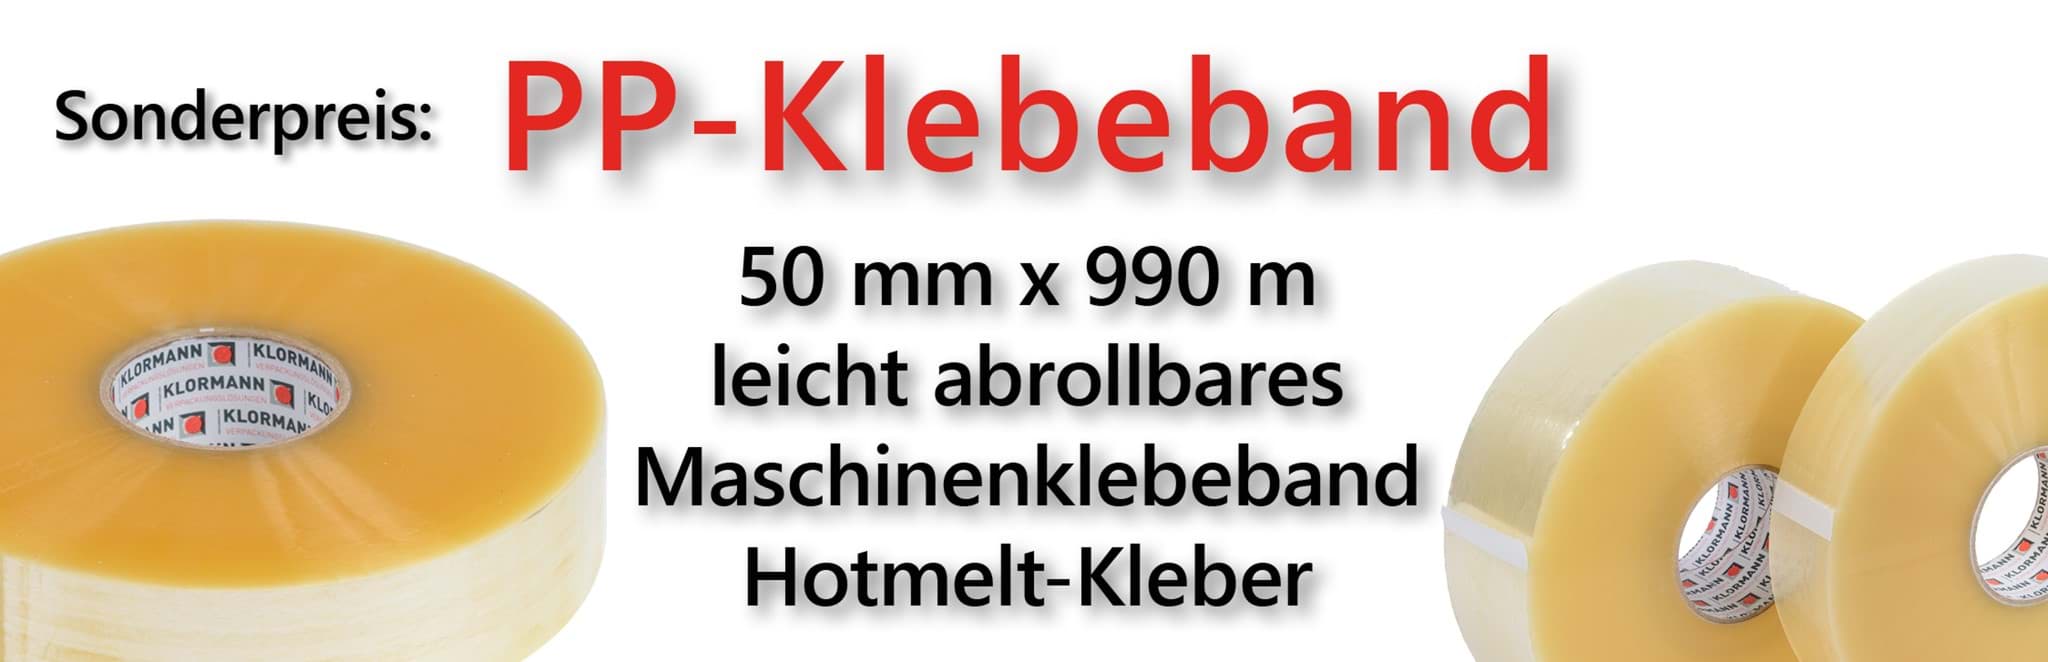 Bild von PP-Klebeband, 50 mm x 990 m, leicht abrollbar, Hotmelt-Kleber